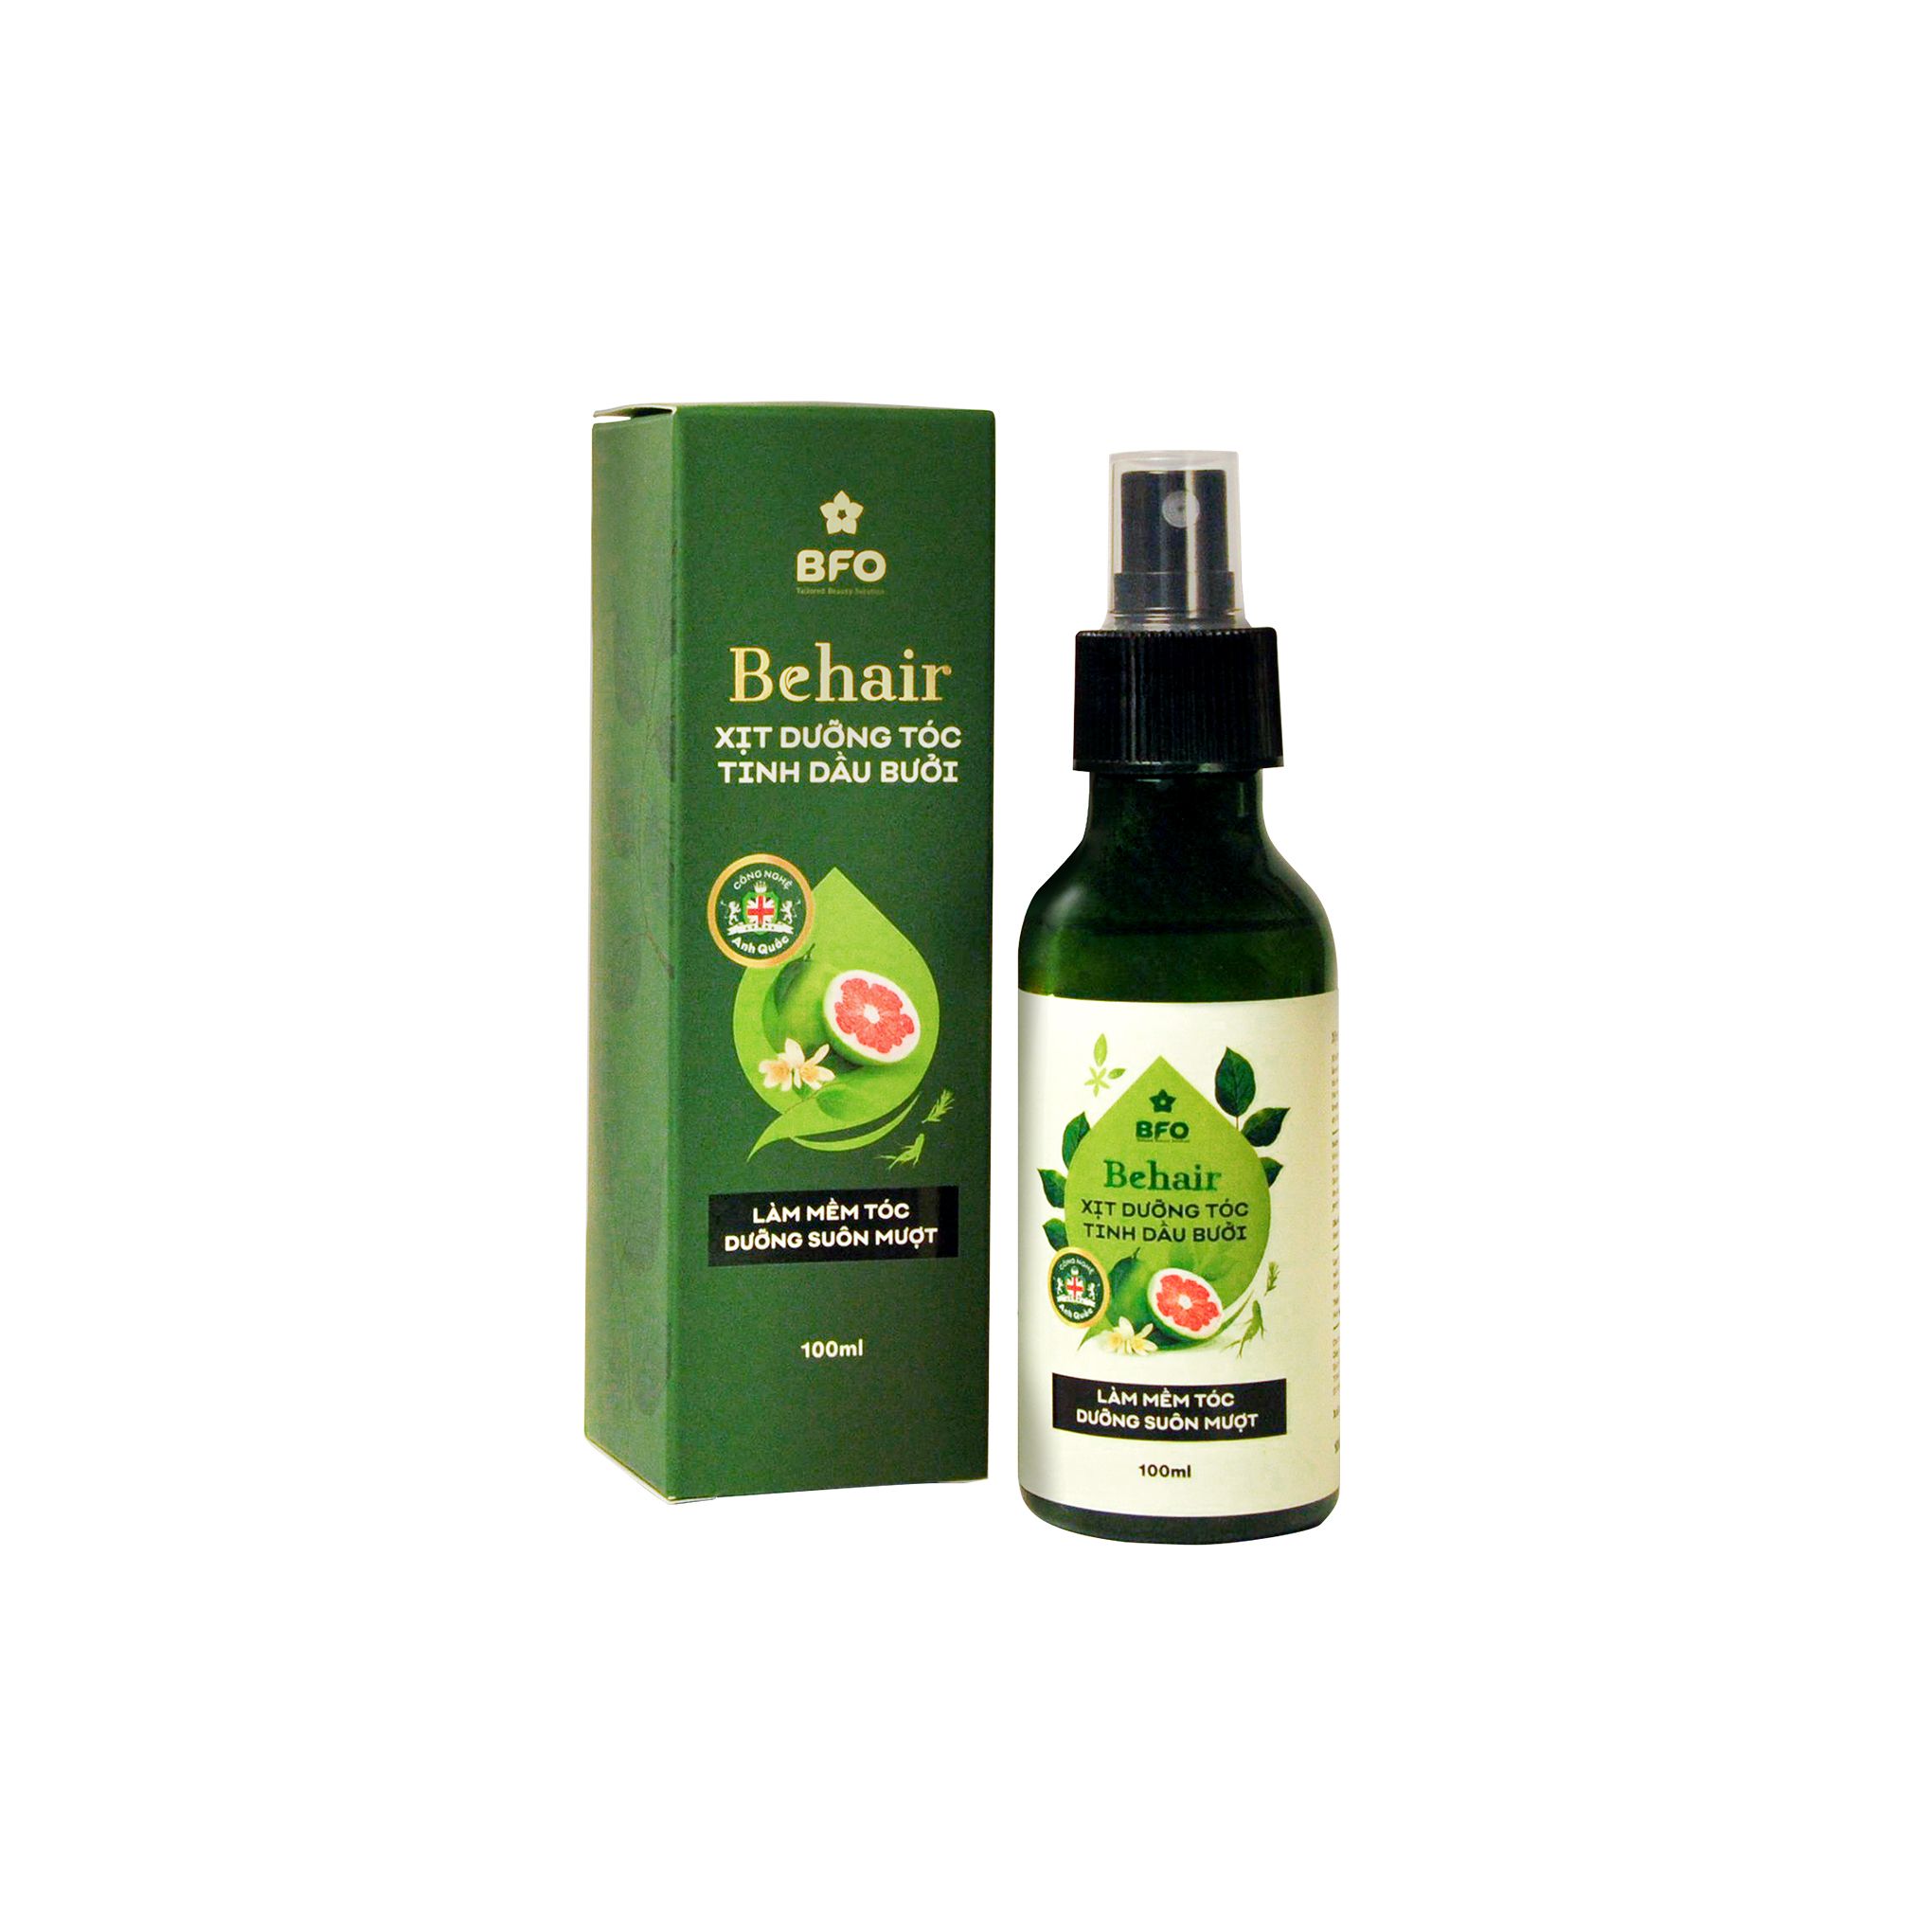  Xịt dưỡng và hỗ trợ mọc tóc tinh dầu bưởi Behair - 100ml 